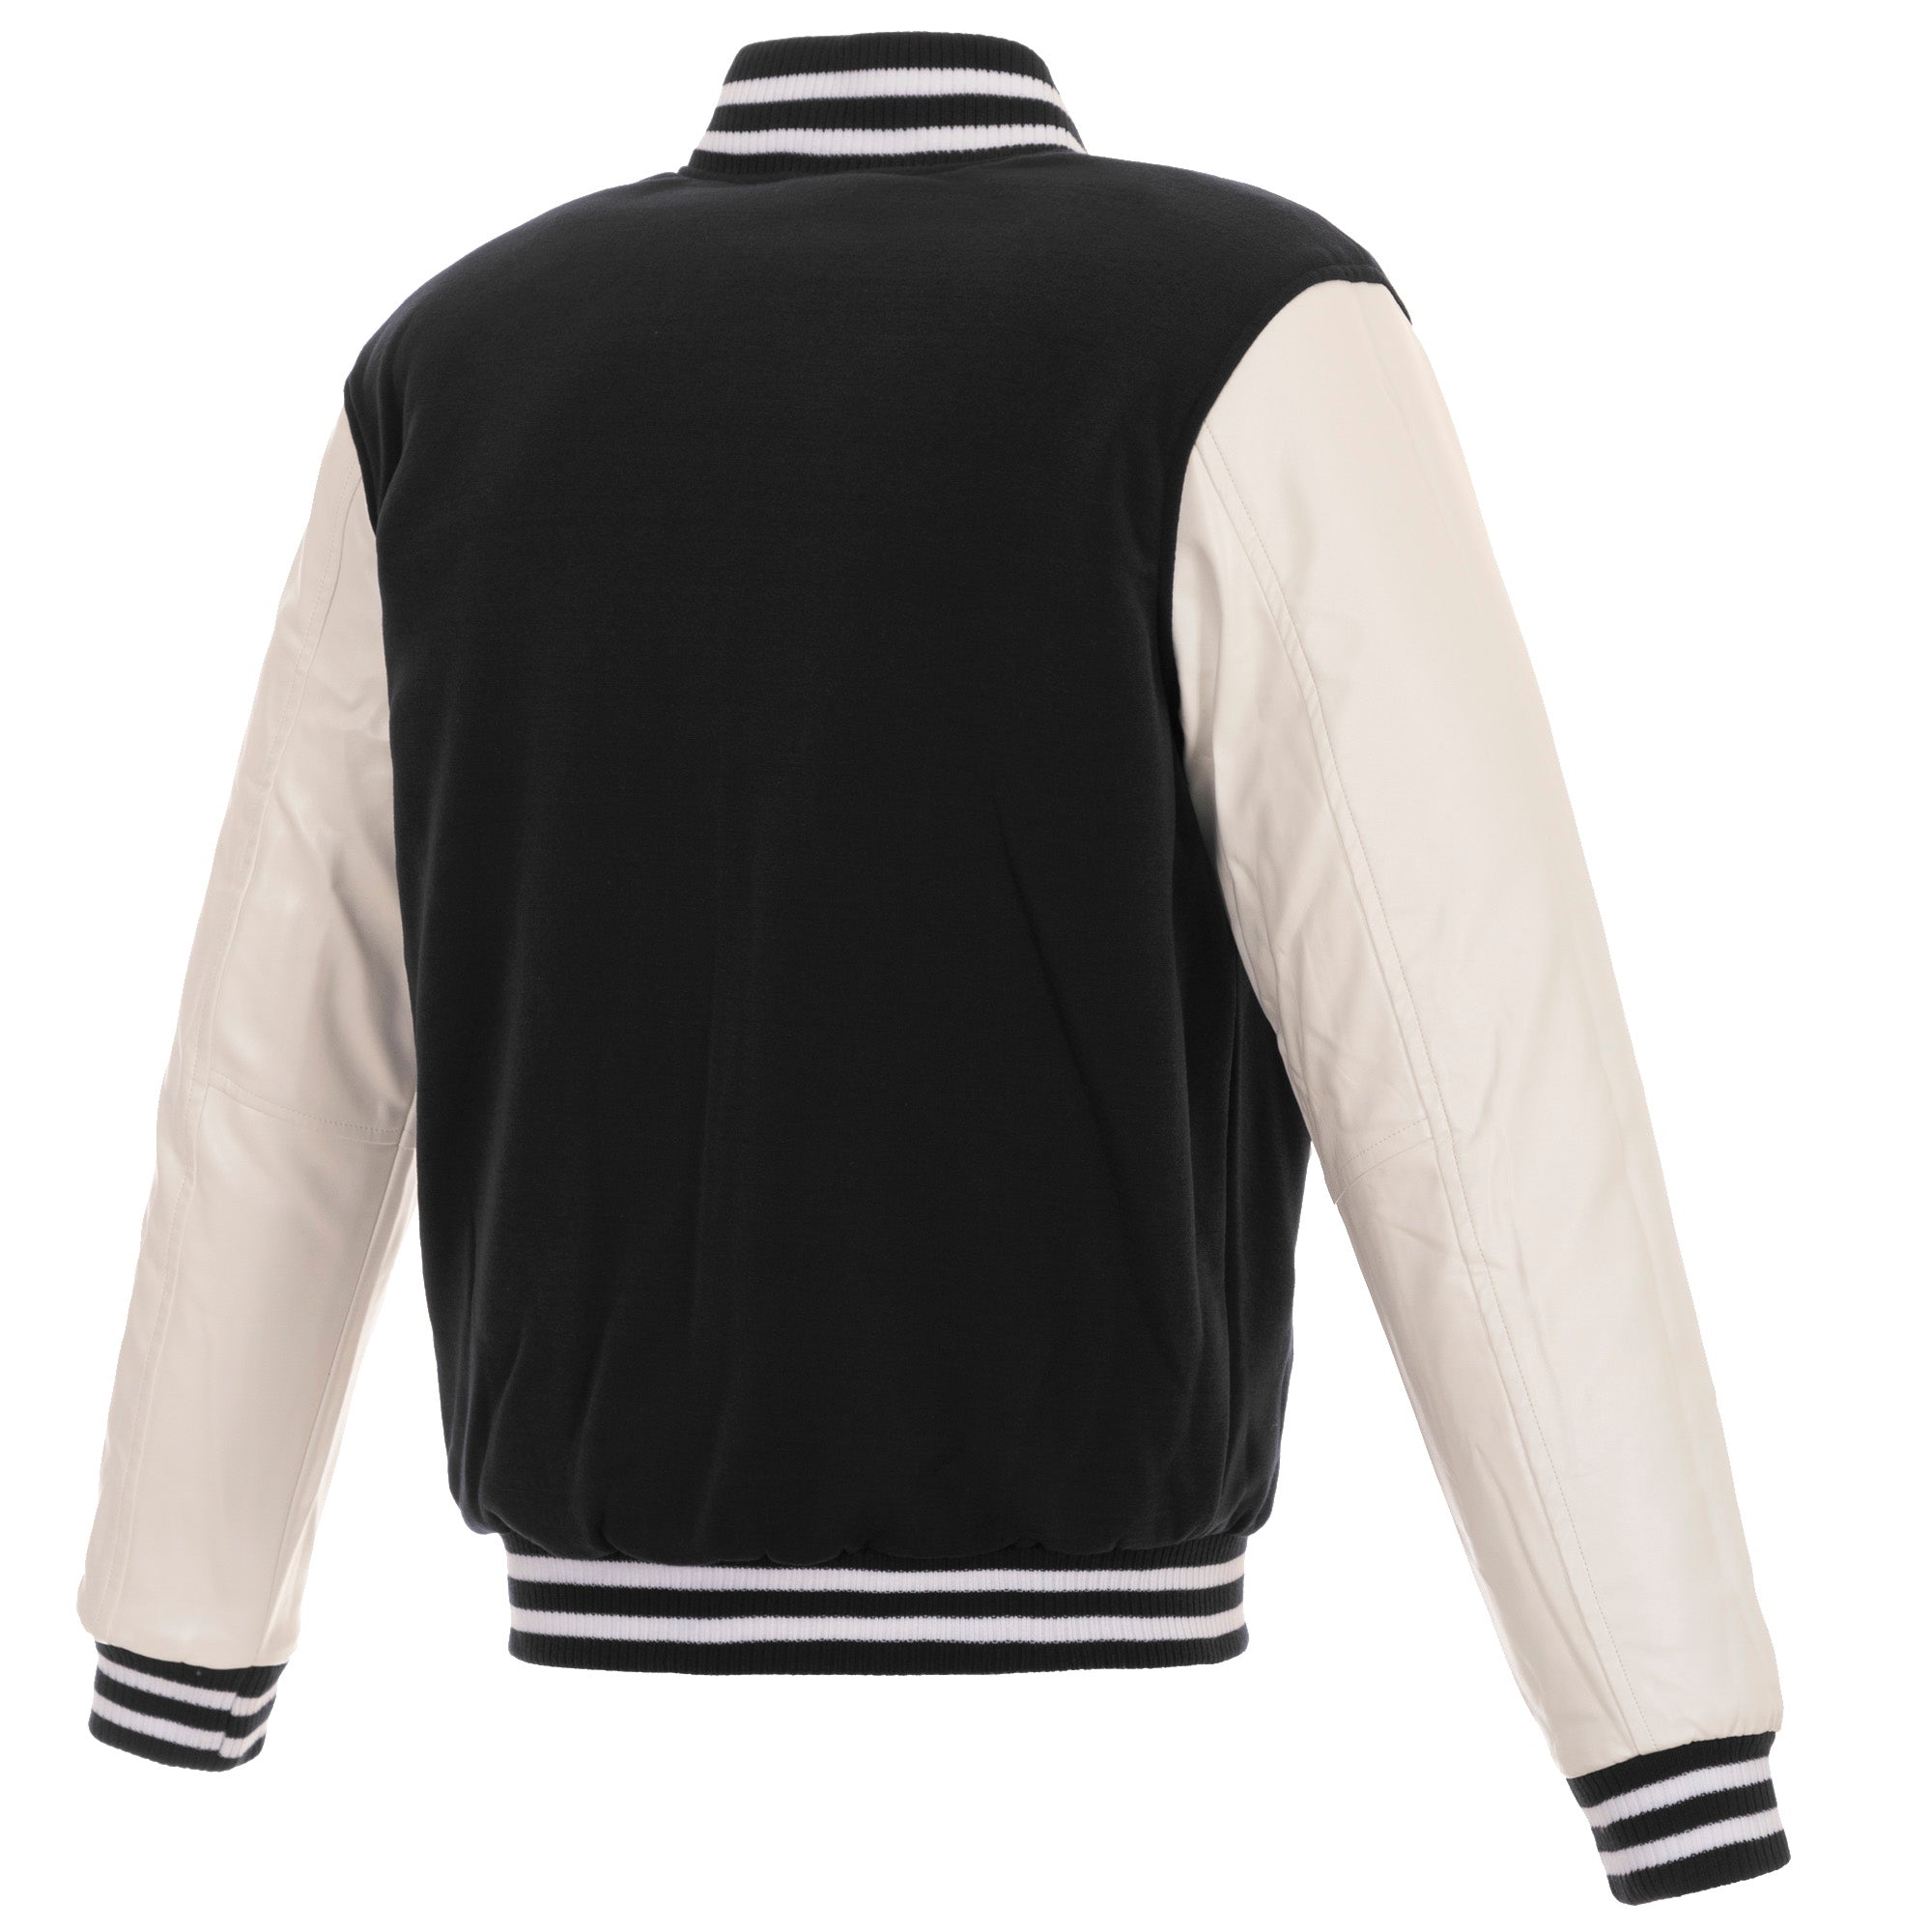 JH Distributors San Jose Sharks Reversible Letterman Mens Jacket (Black/White)